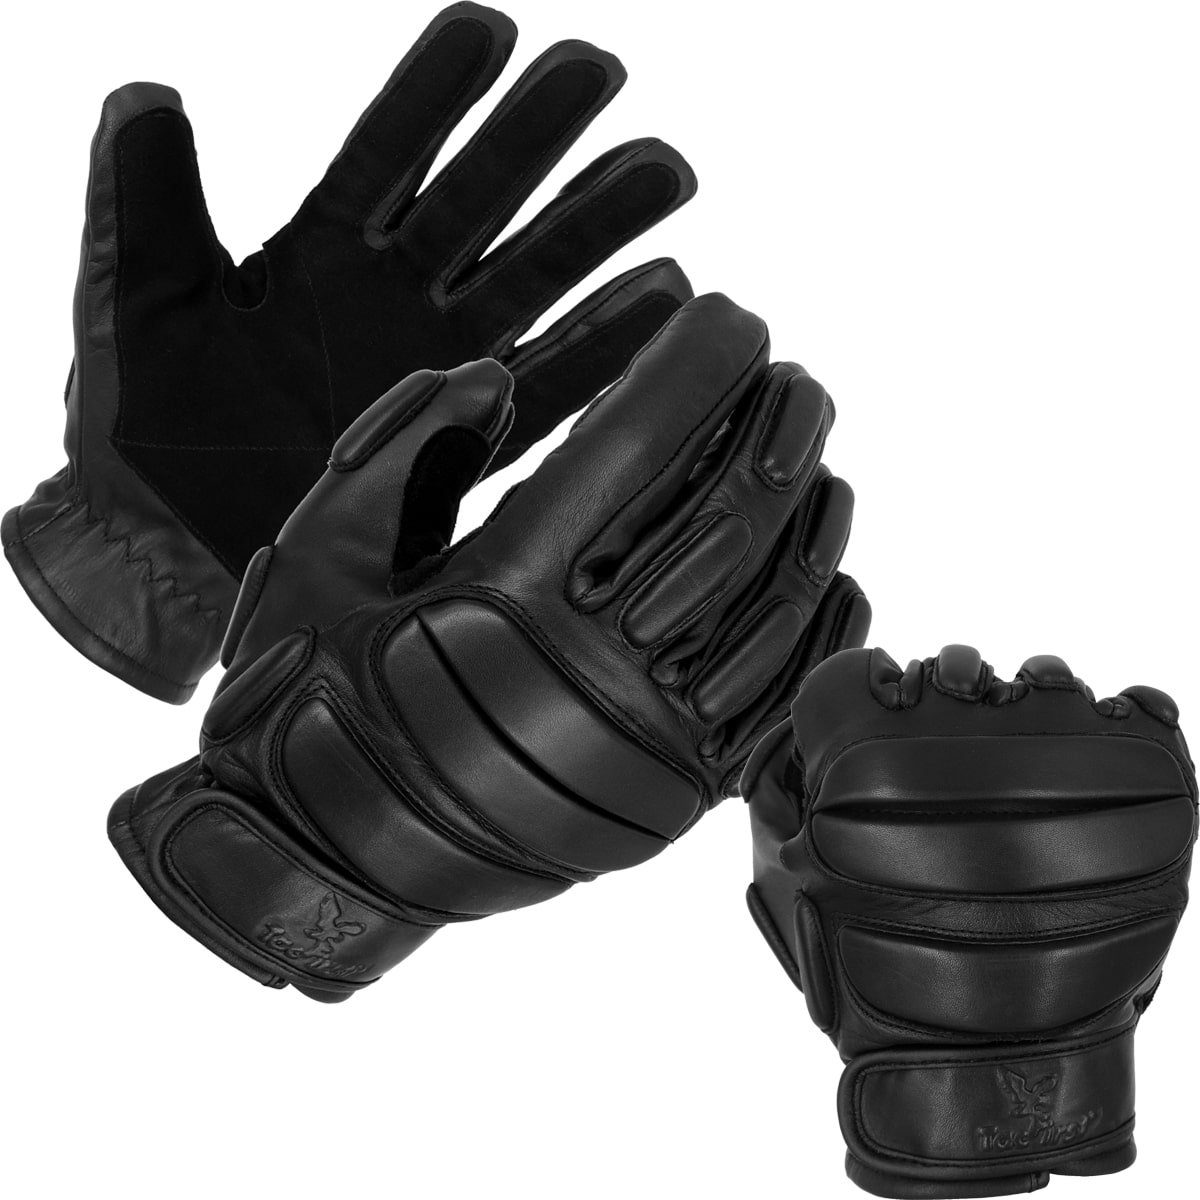 Cop Polizei Security Winter Einsatzhandschuhe Handschuhe Kevlar Schnittschutz 